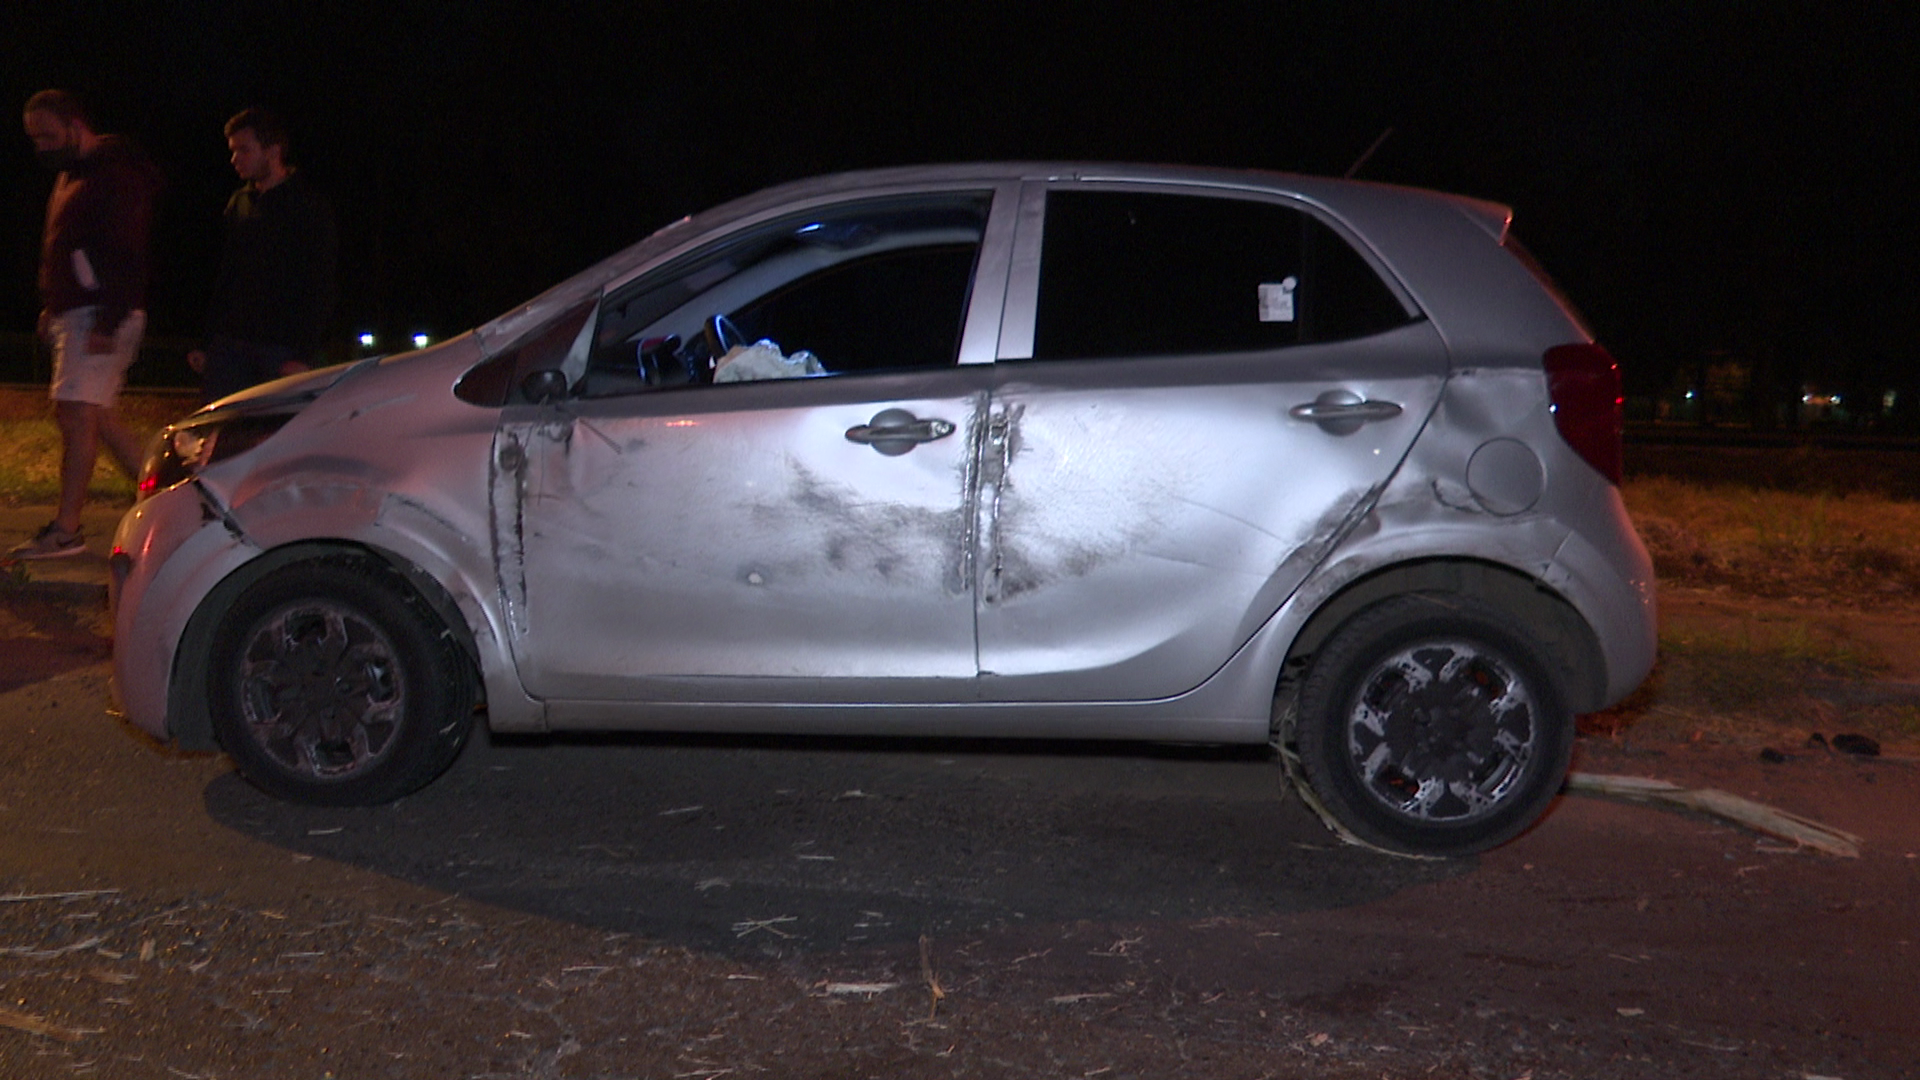 Un automovilista sufrió un vuelco, luego de pasar con su rodado sobre restos de caña de azúcar esparcidos sobre el asfalto.